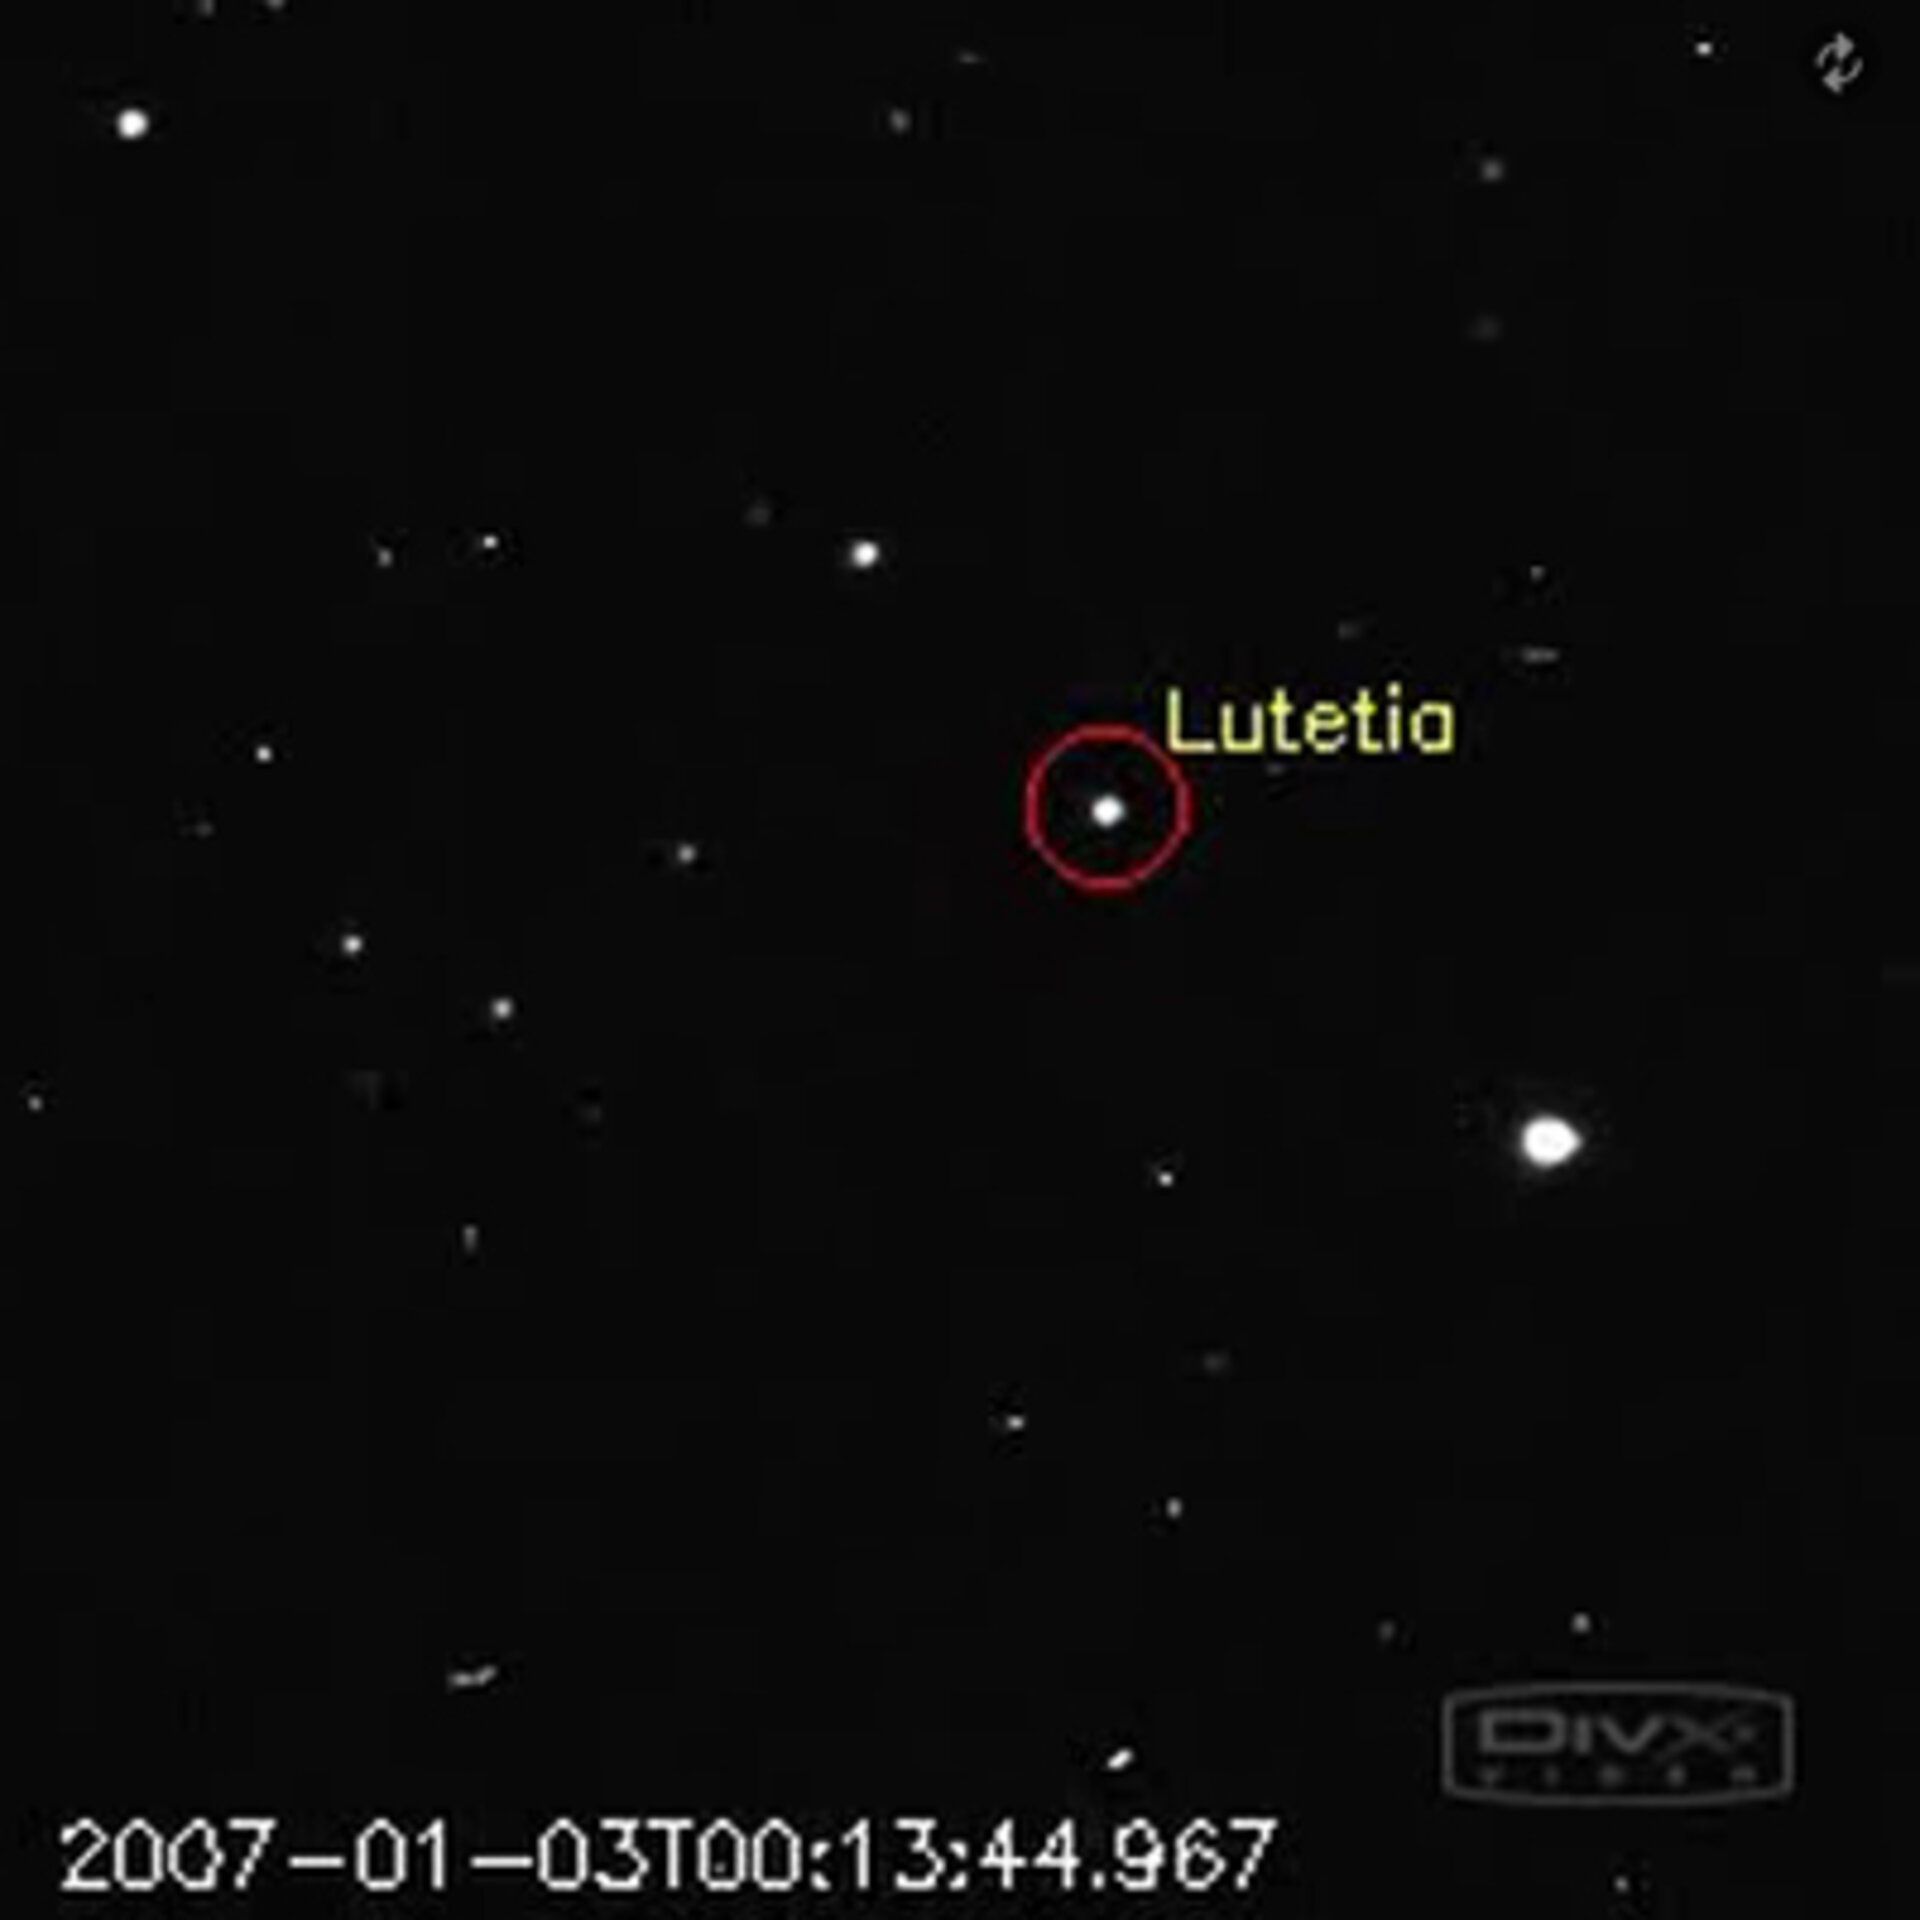 Rosetta spanade på Lutetia redan 2007 och ska nu den 10 juli titta närmare på asteroiden.